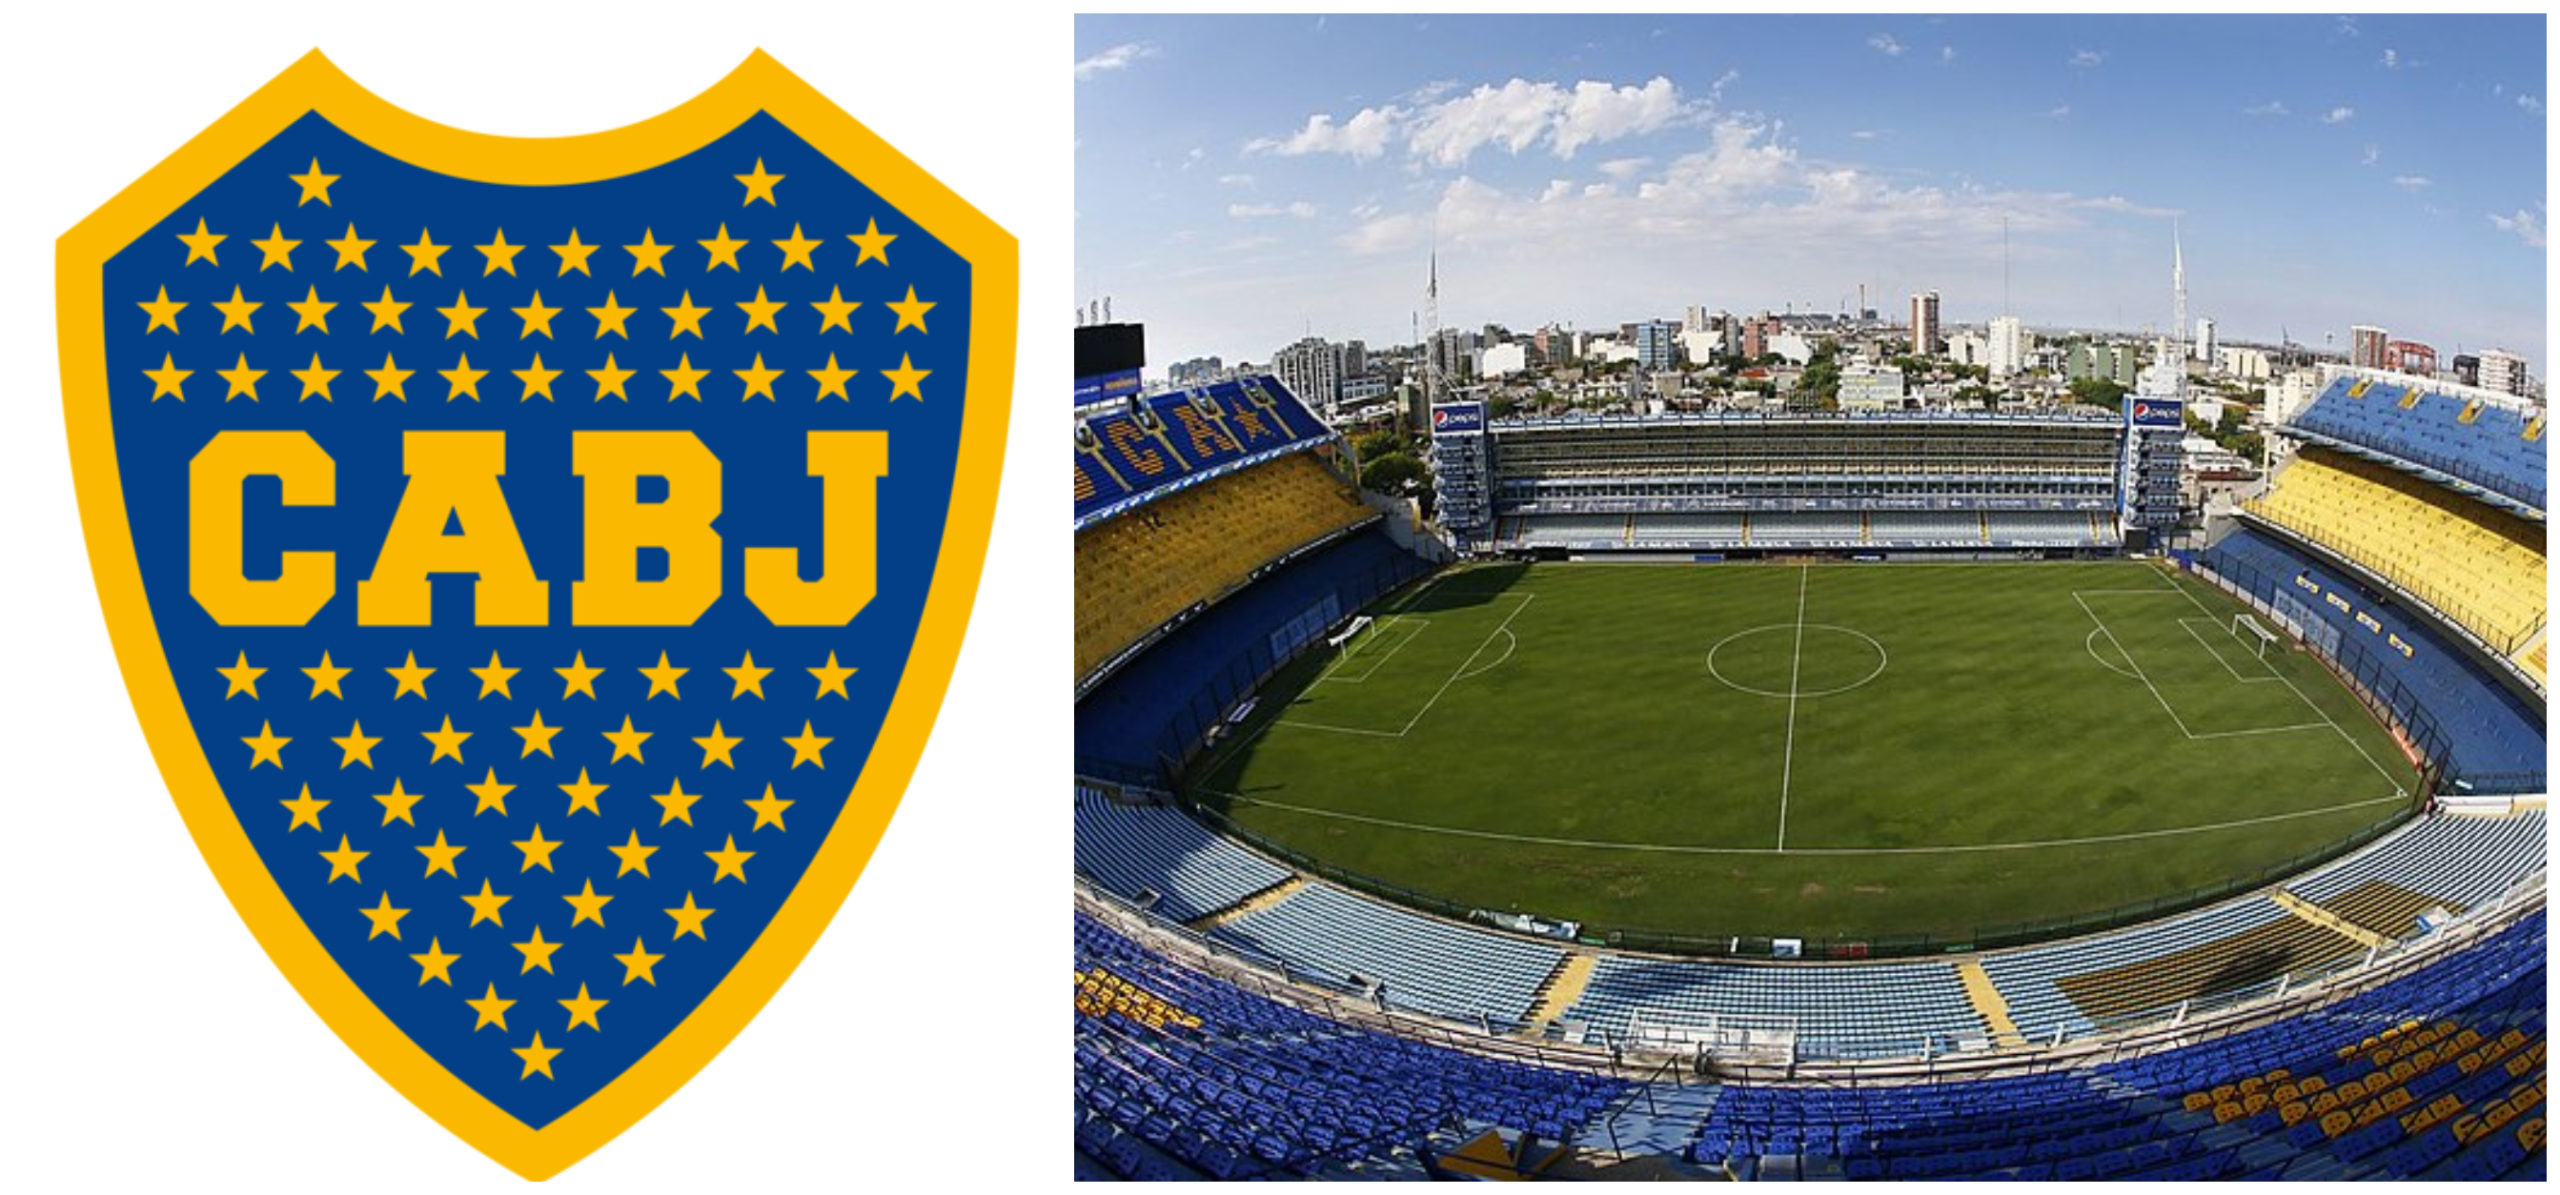 boca_logo_stadium